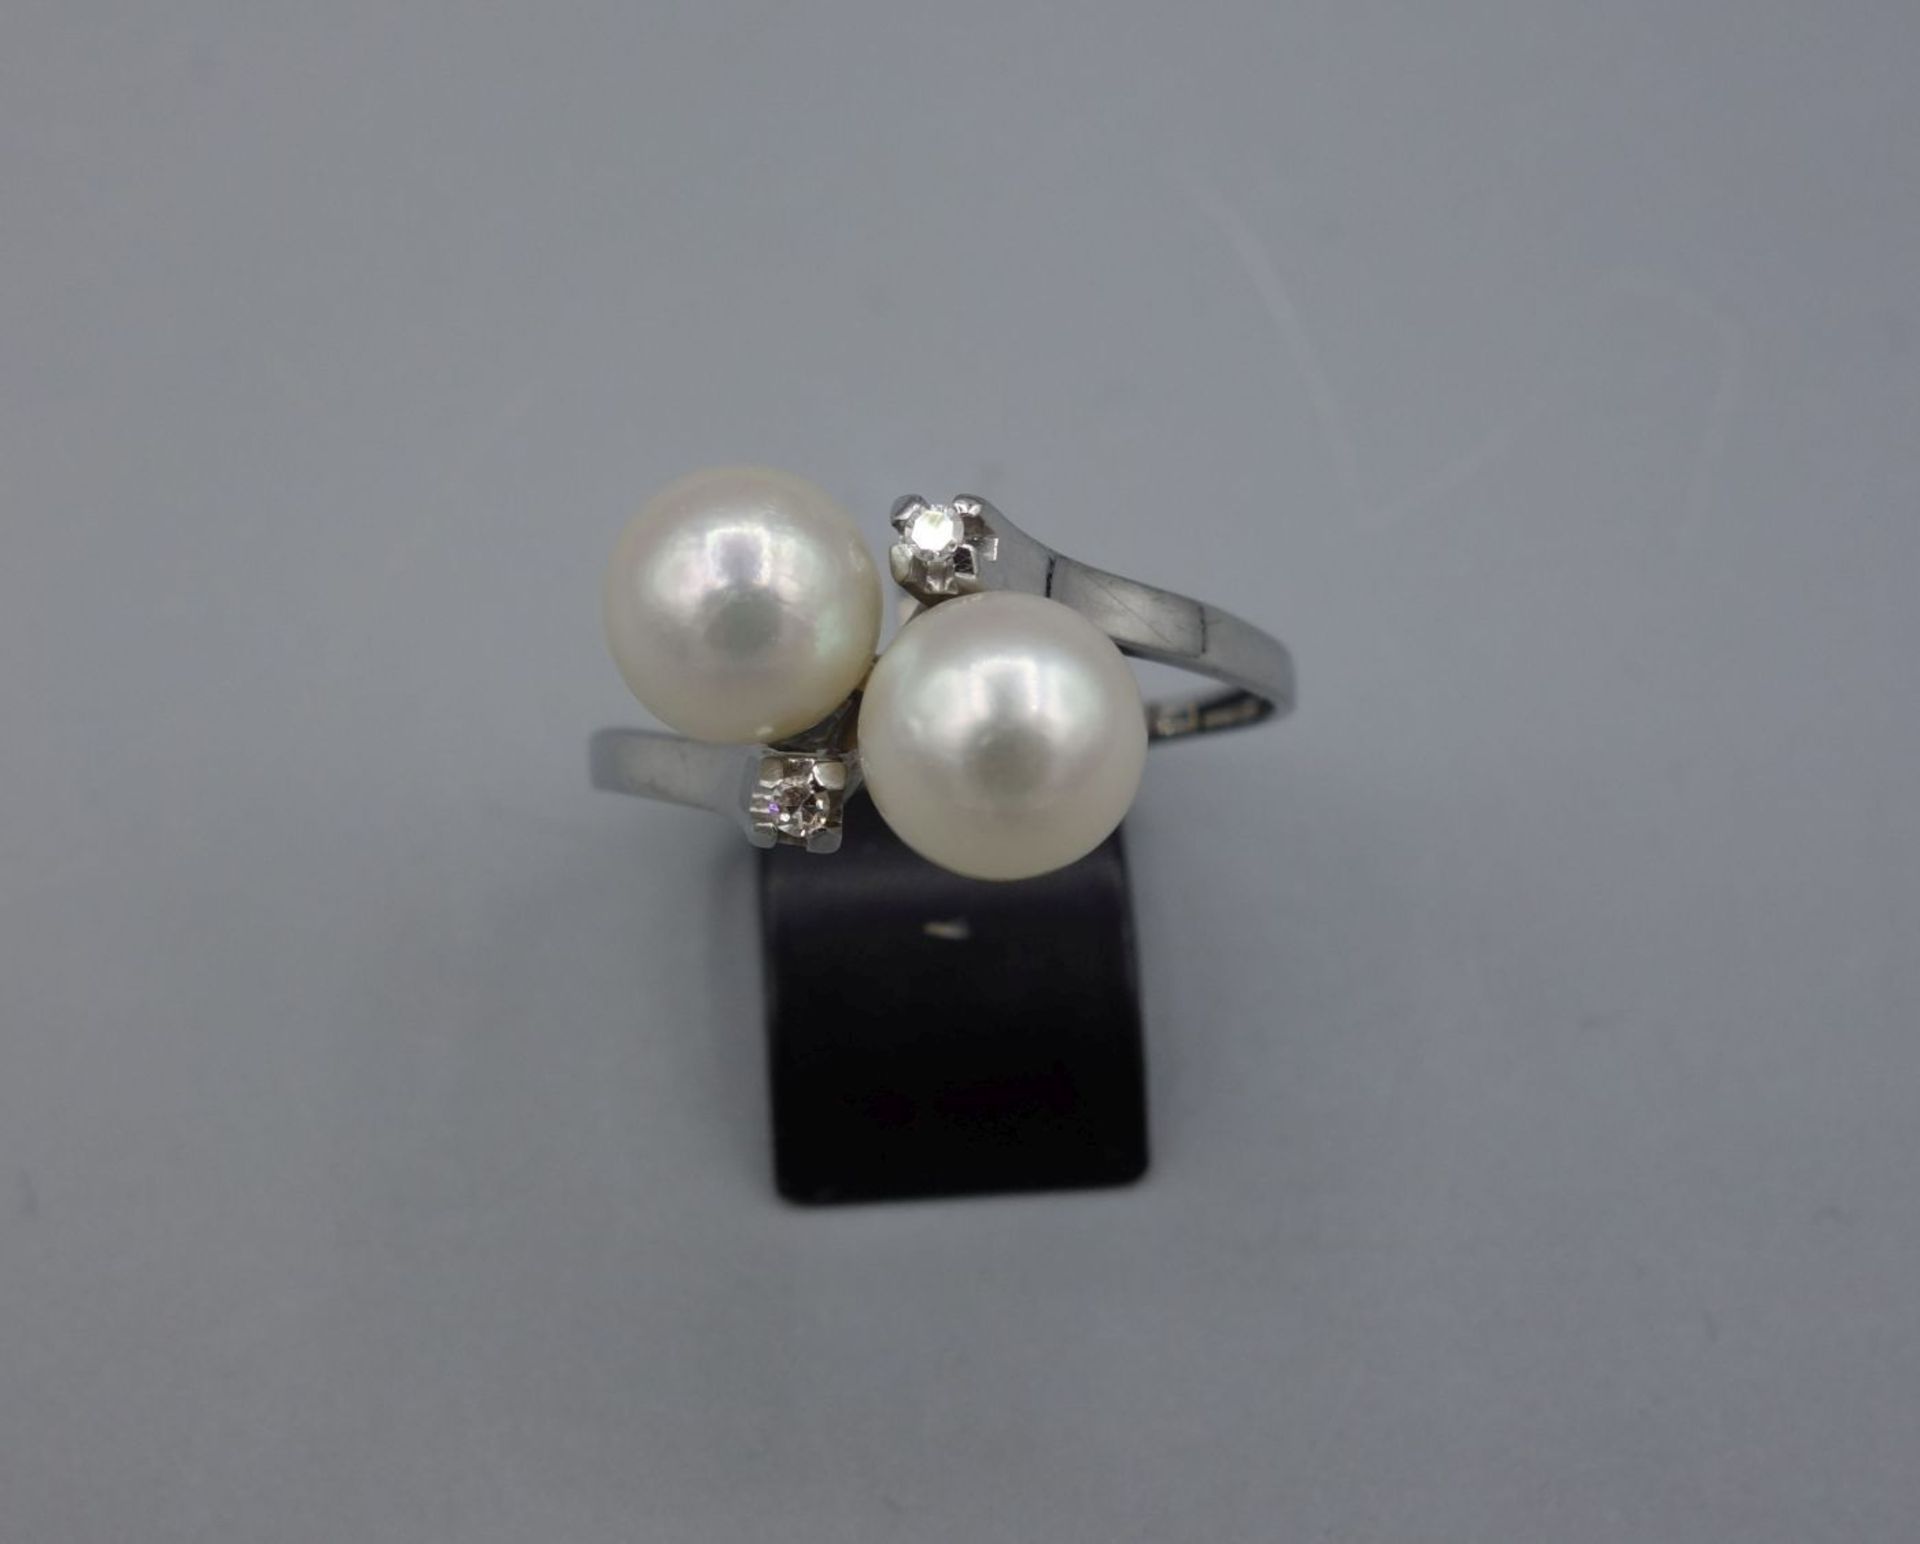 RING, 750er Weissgold (3,6 g), besetzt mit 2 Perlen (D. 6 mm) und zwei kleinen Brillanten. Ring-Gr.